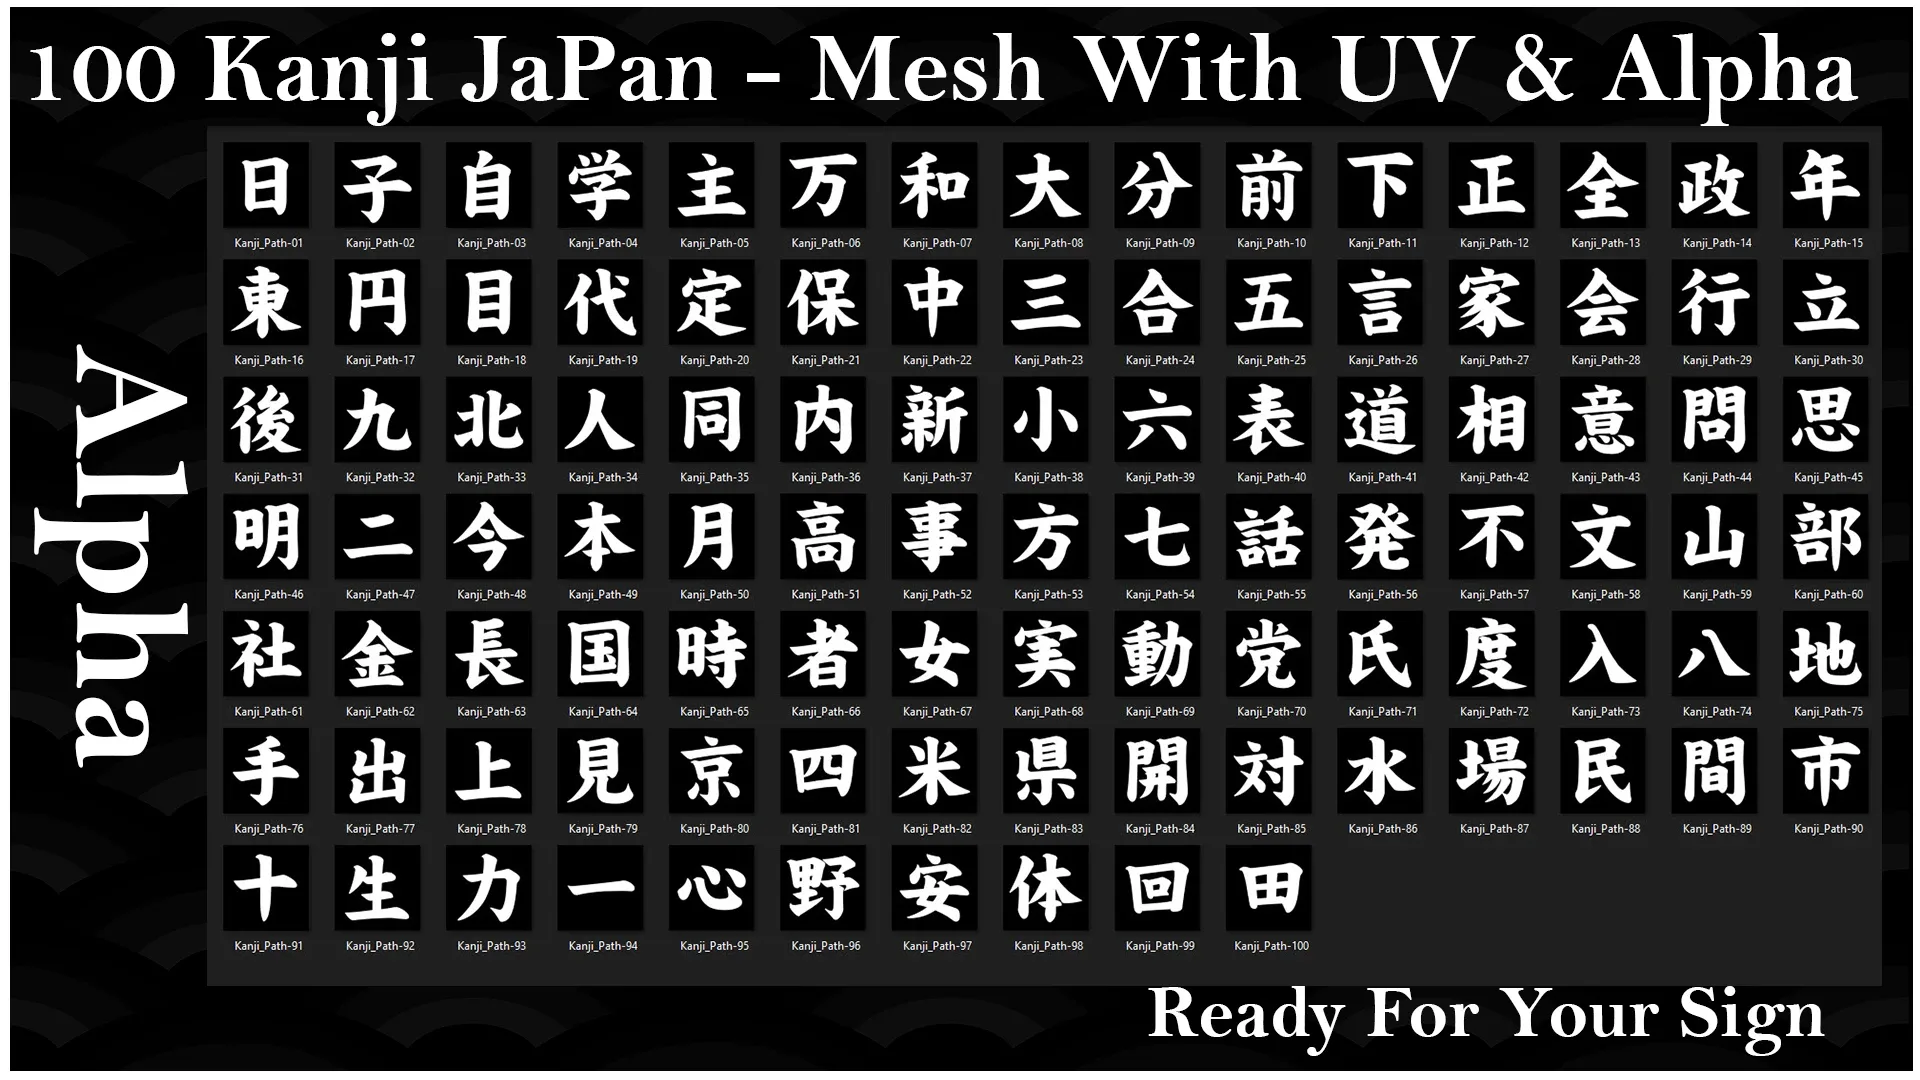 100 Kanji Japan Mesh With UV and Alpha